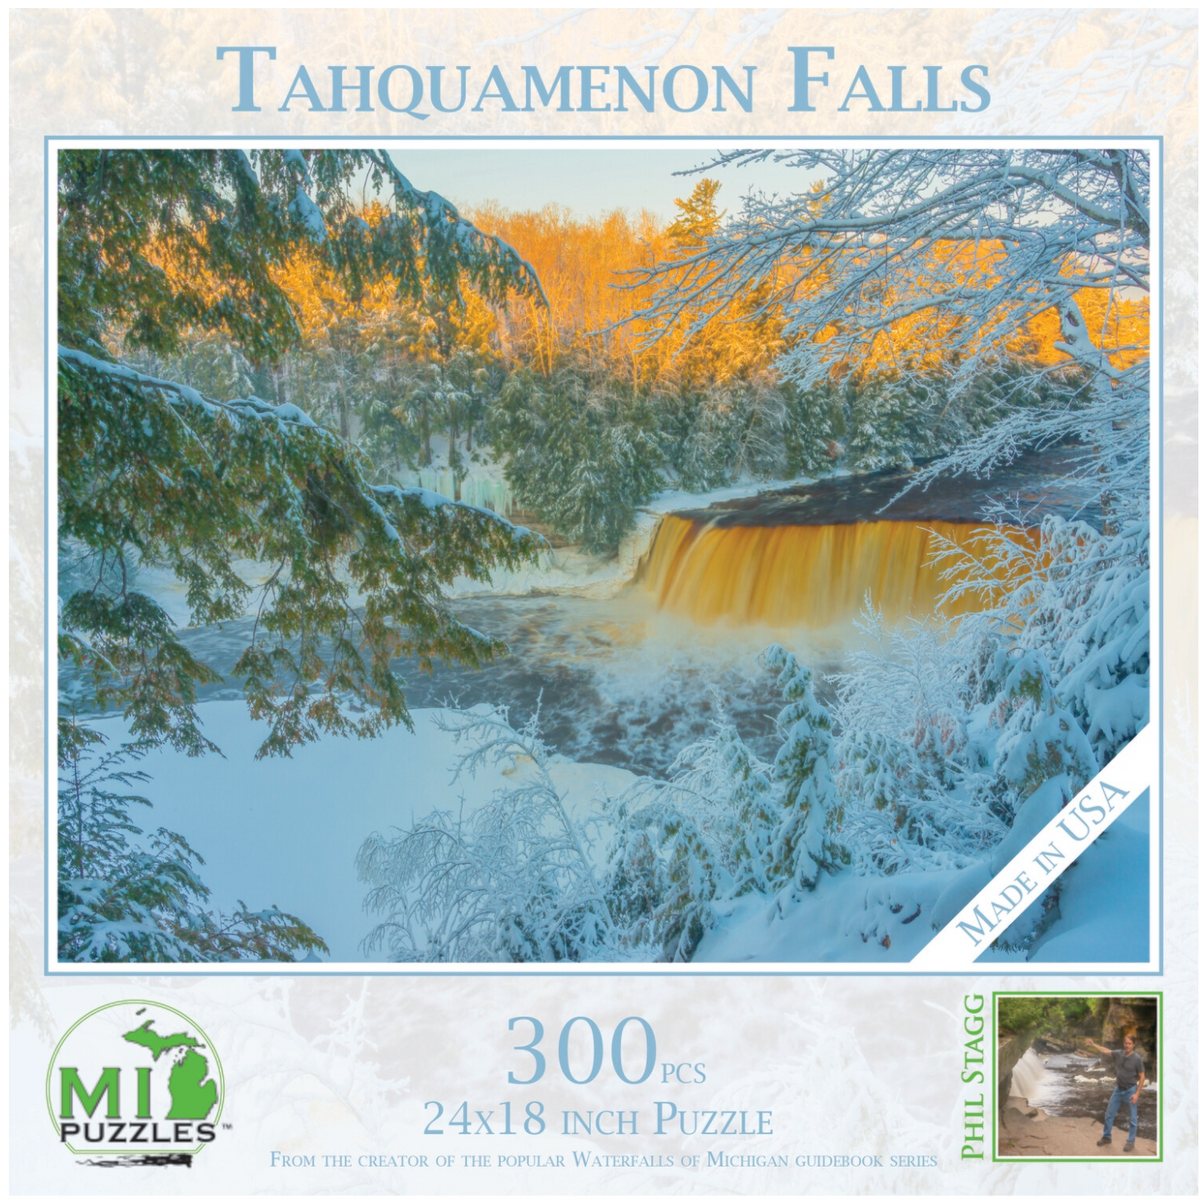 Tahquamenon Falls 300 piece Phil Stagg puzzle